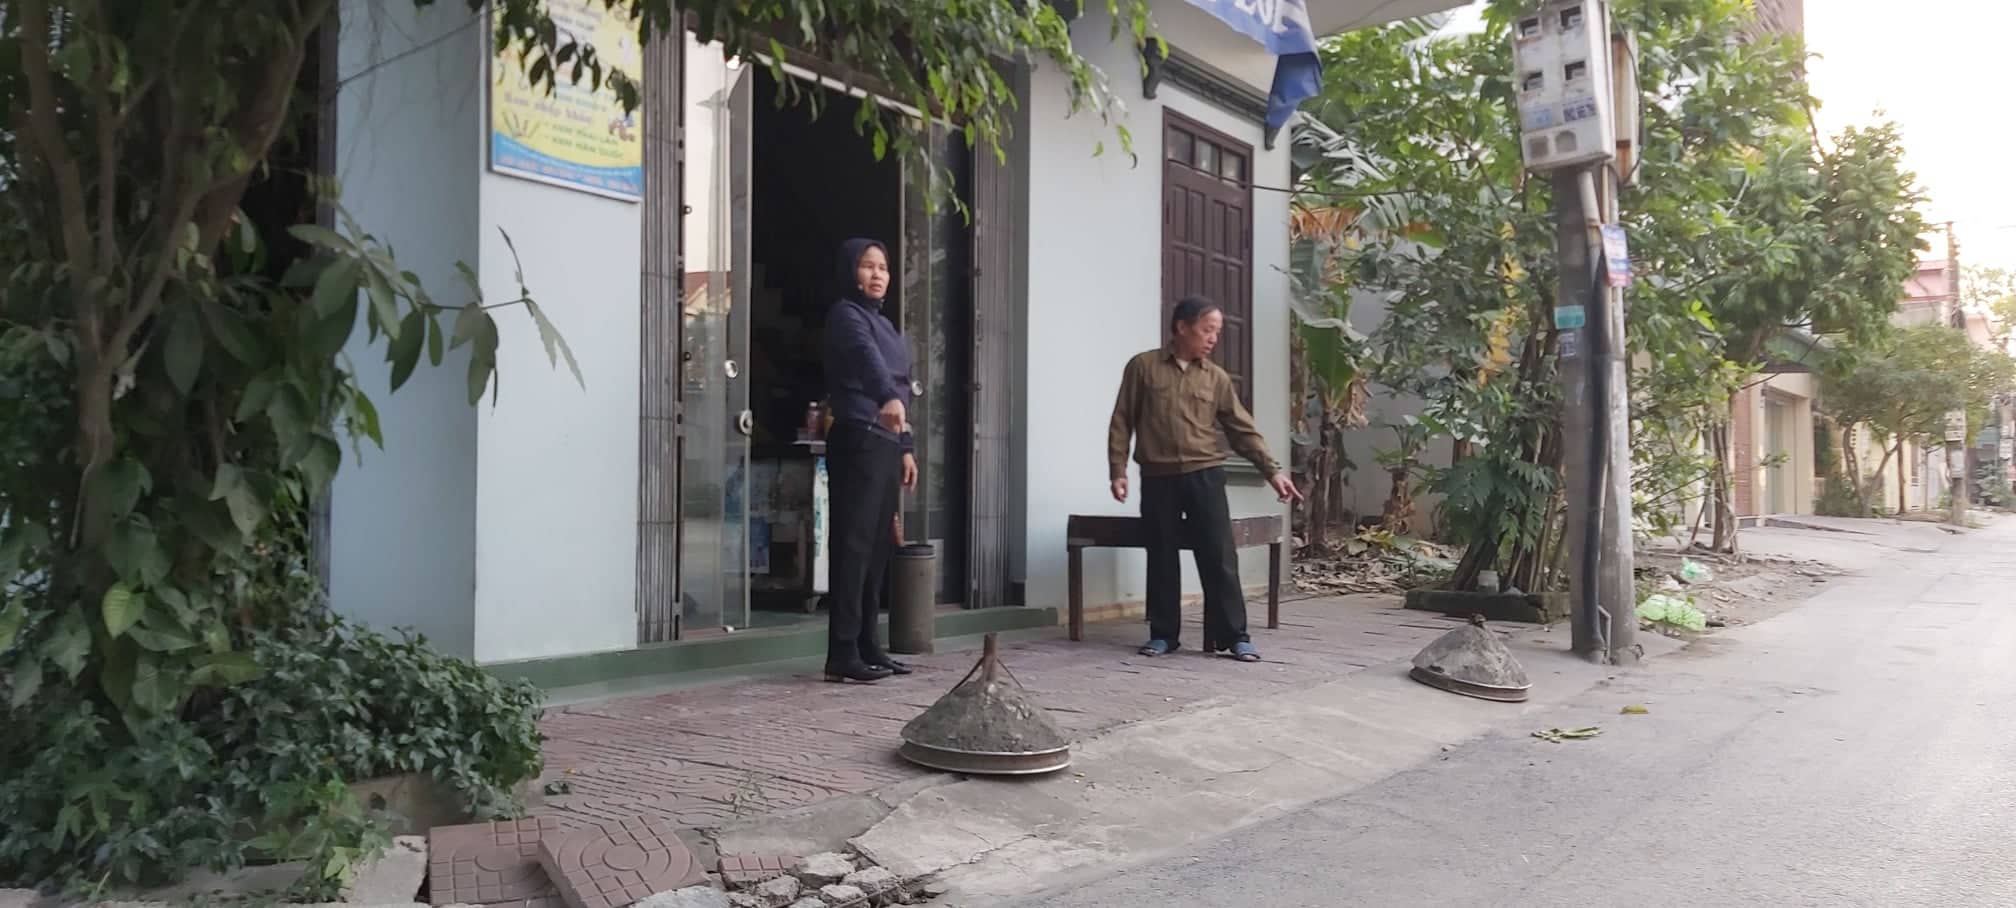 Nhà ông Trần Văn Đến phải chặn hai cục bê tông hai bên để tránh xe va vào nhà.